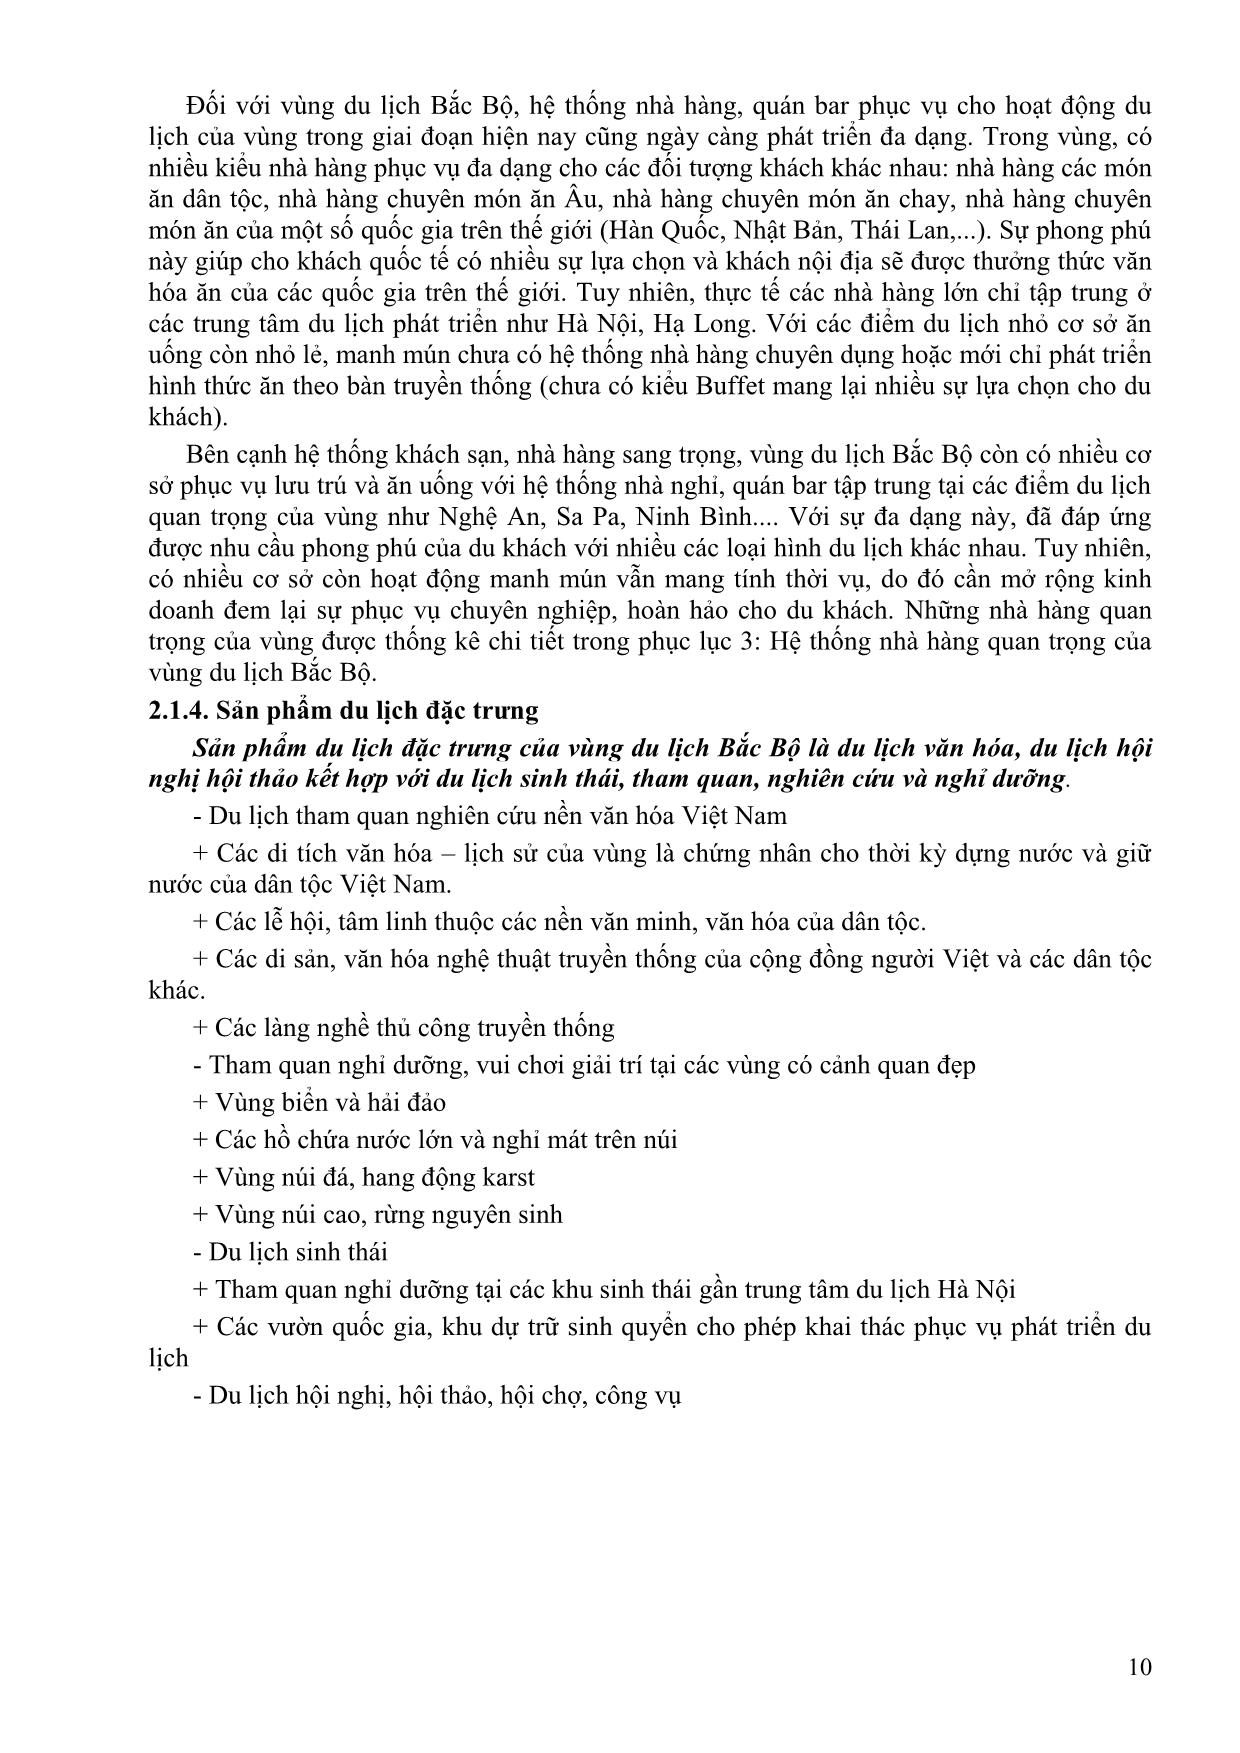 Bài giảng Tuyến điểm du lịch Việt Nam - Đồng Thị Thu Huyền trang 10